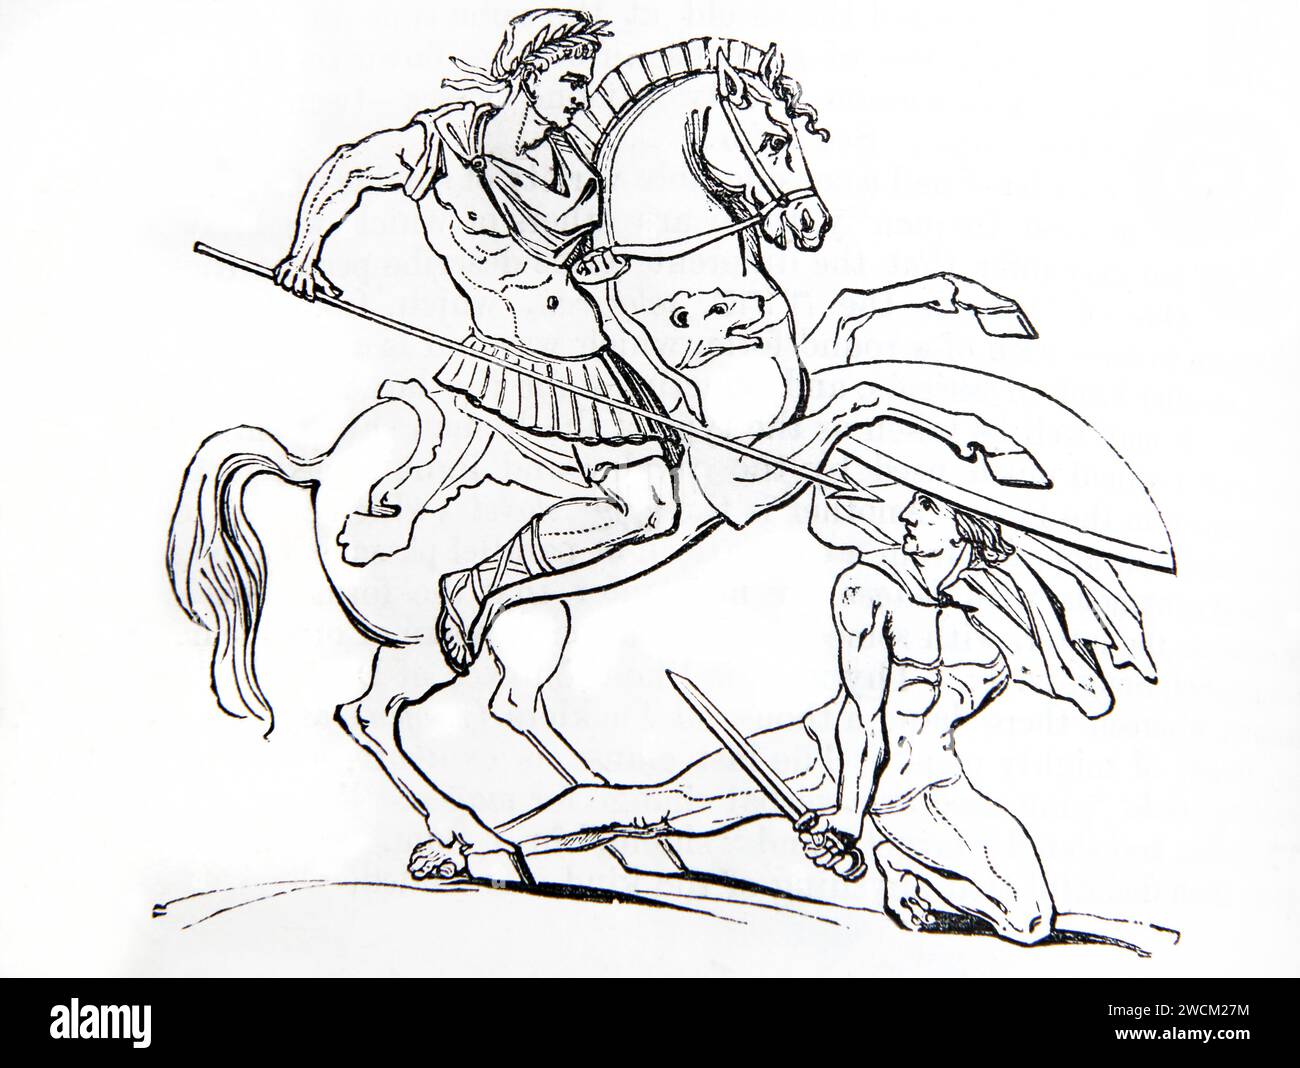 Grabado de madera de un soldado romano que ataca a un bárbaro protegido por un gran escudo de la Biblia familiar ilustrada Foto de stock